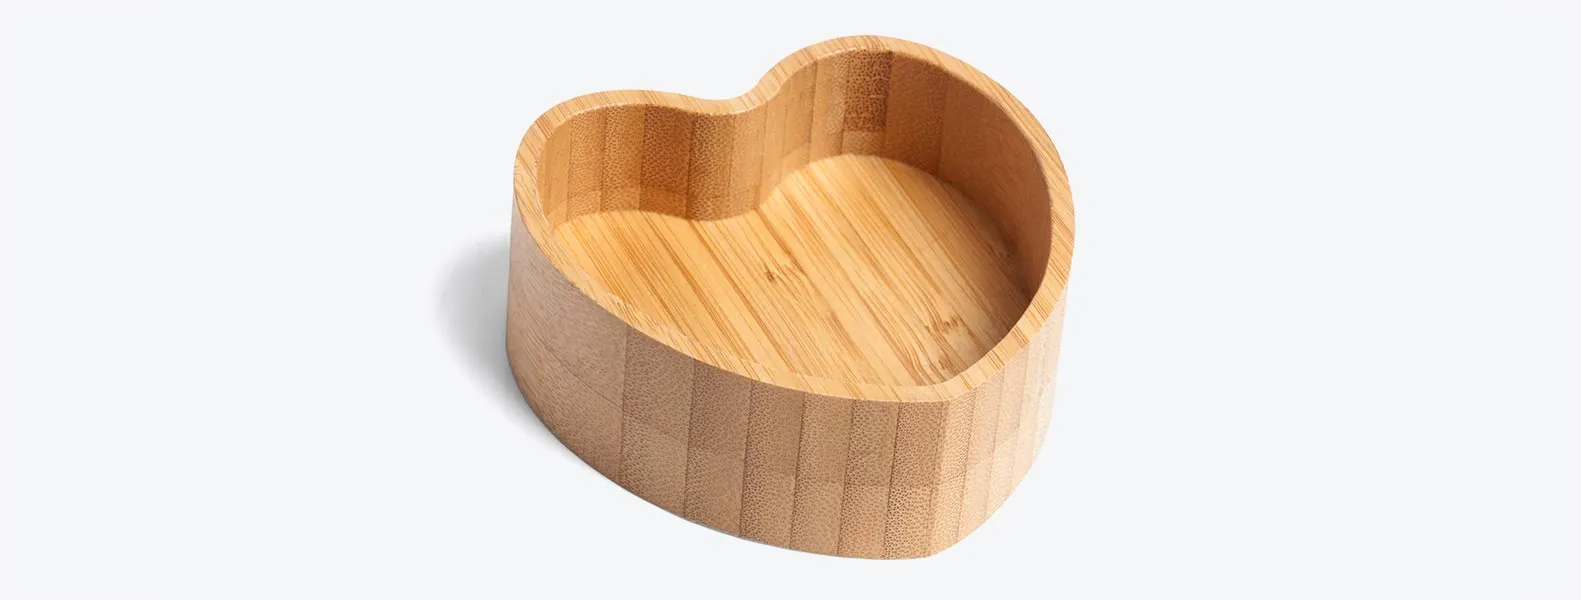 Porta objetos em Bambu com formato de coração.